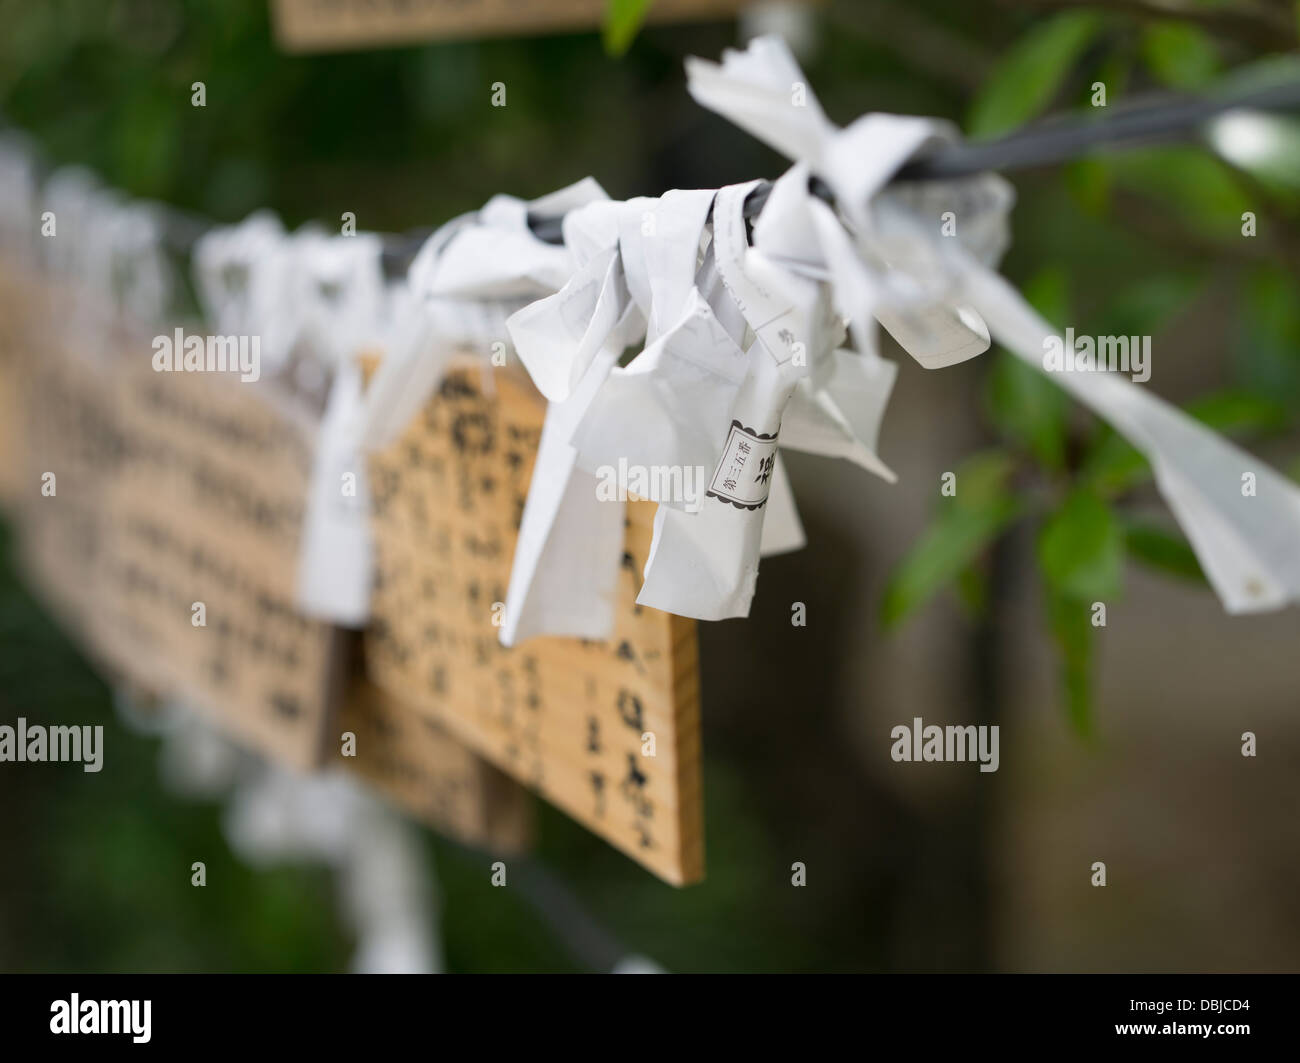 Ema prayer tablets and omikuji fortune papers. Tourinji Temple, Ishigaki Island, Okinawa, Japan Stock Photo